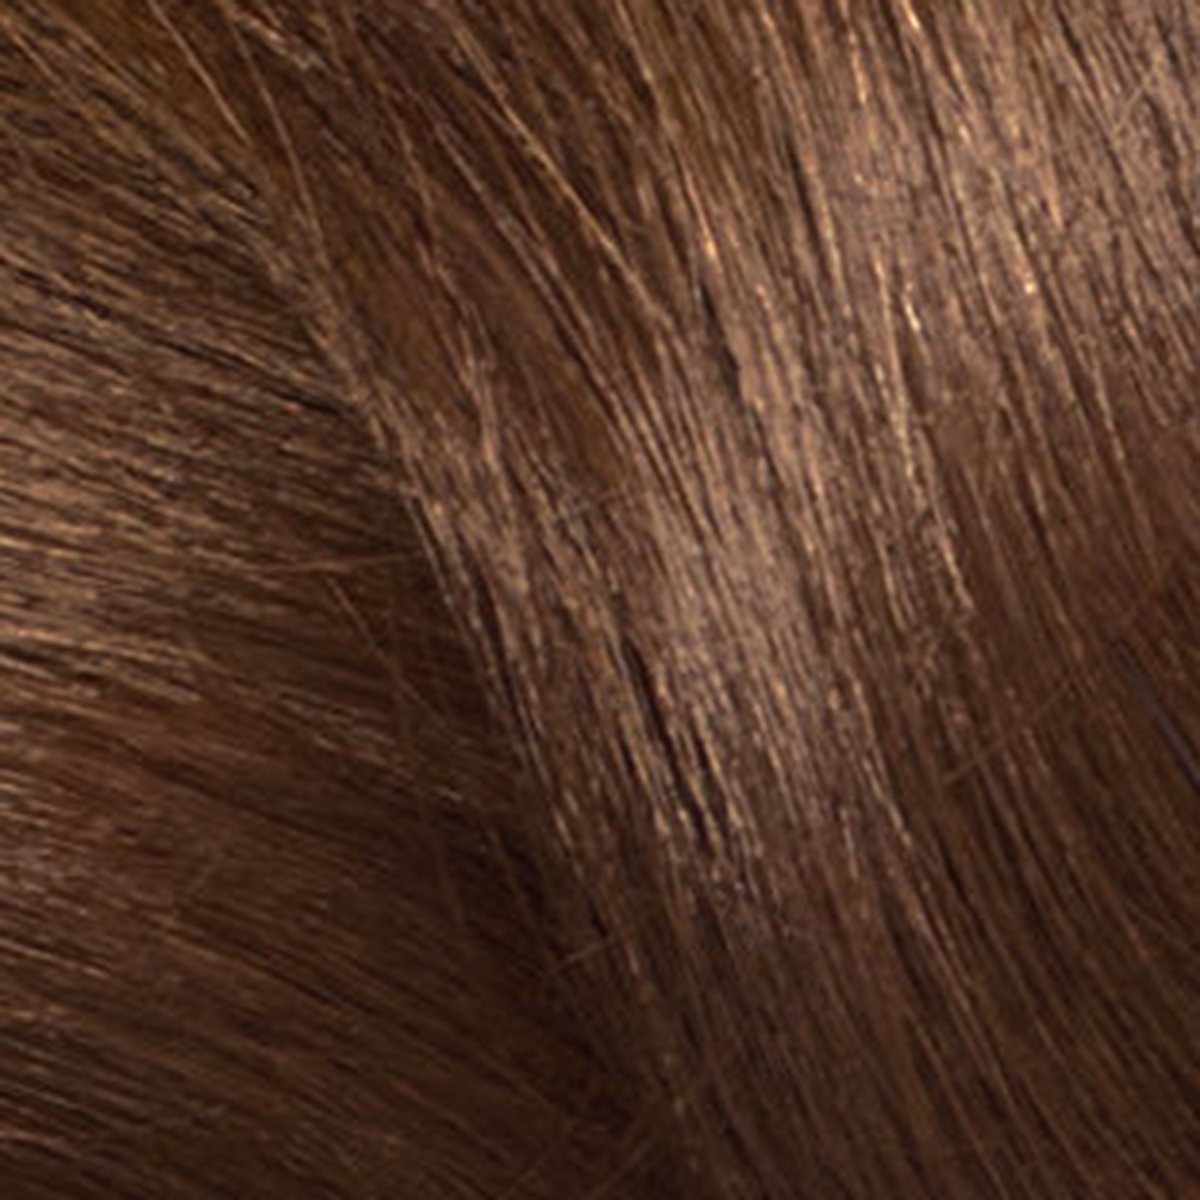 краска для волос цвет лесной орех фото